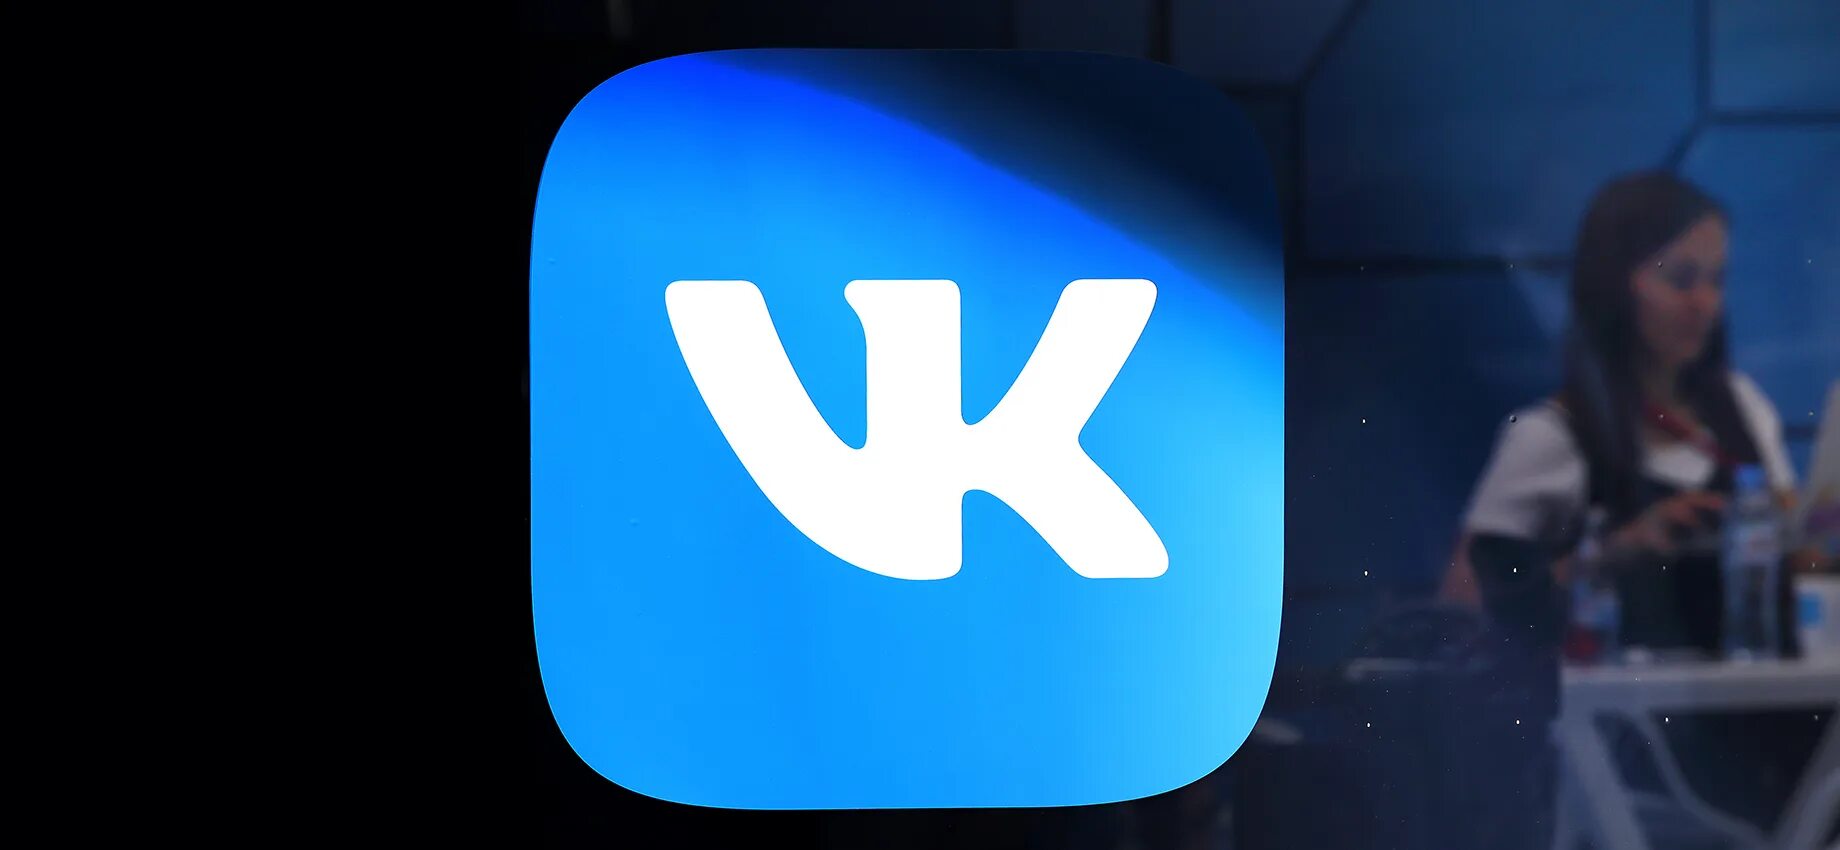 ВК лого. ВК FAQ. Фото удалено. App Store корейский игра. Видео вк без рекламы